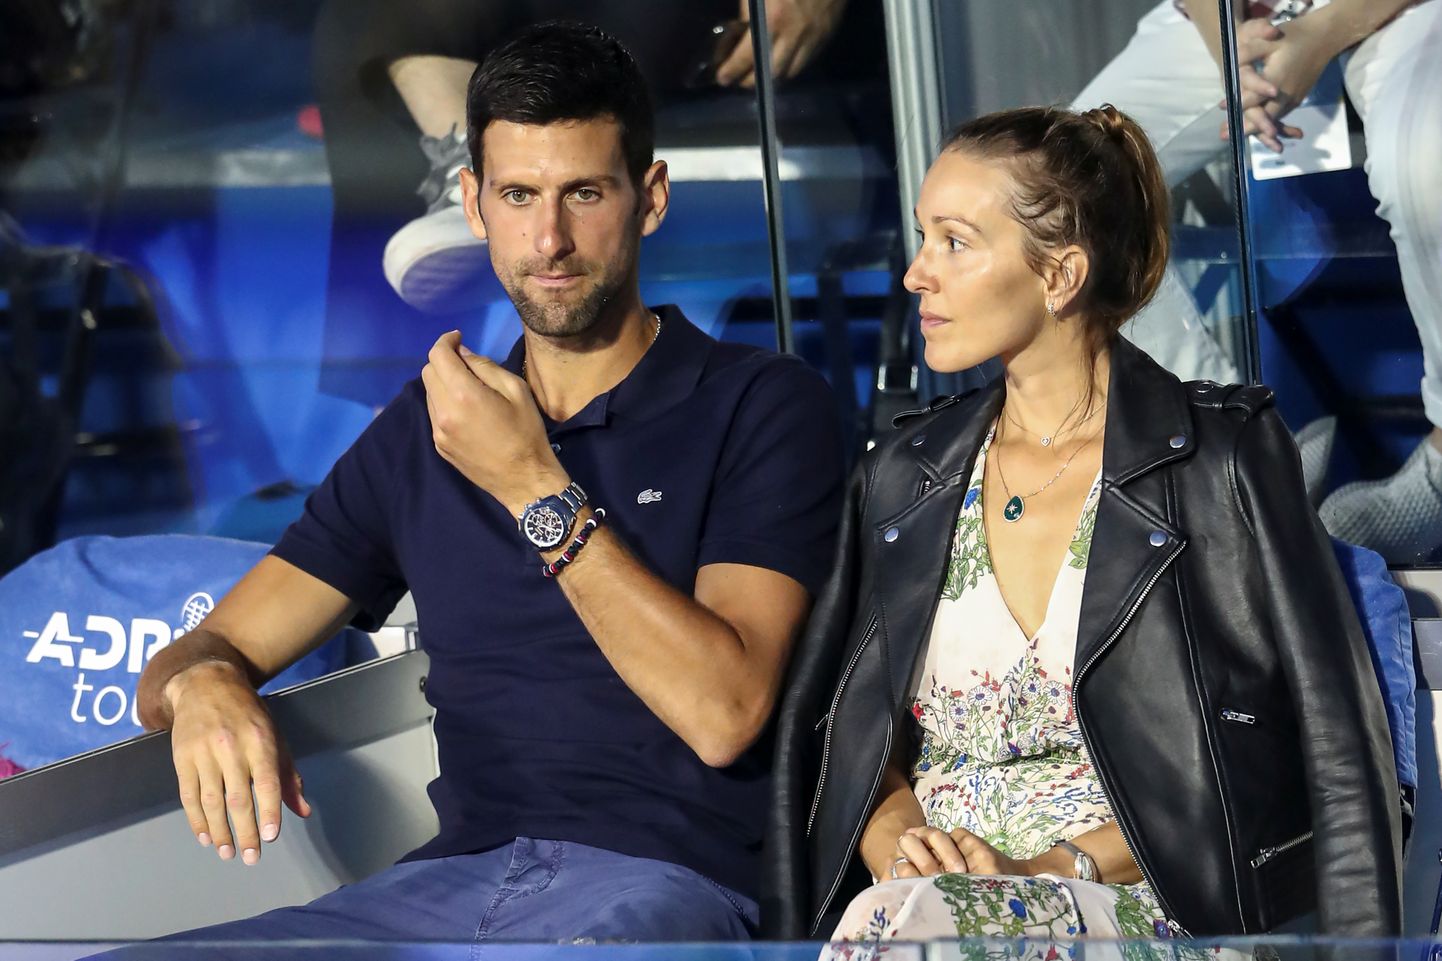 Maailma esireket Novak Djokovic koos oma naise Jelenaga.